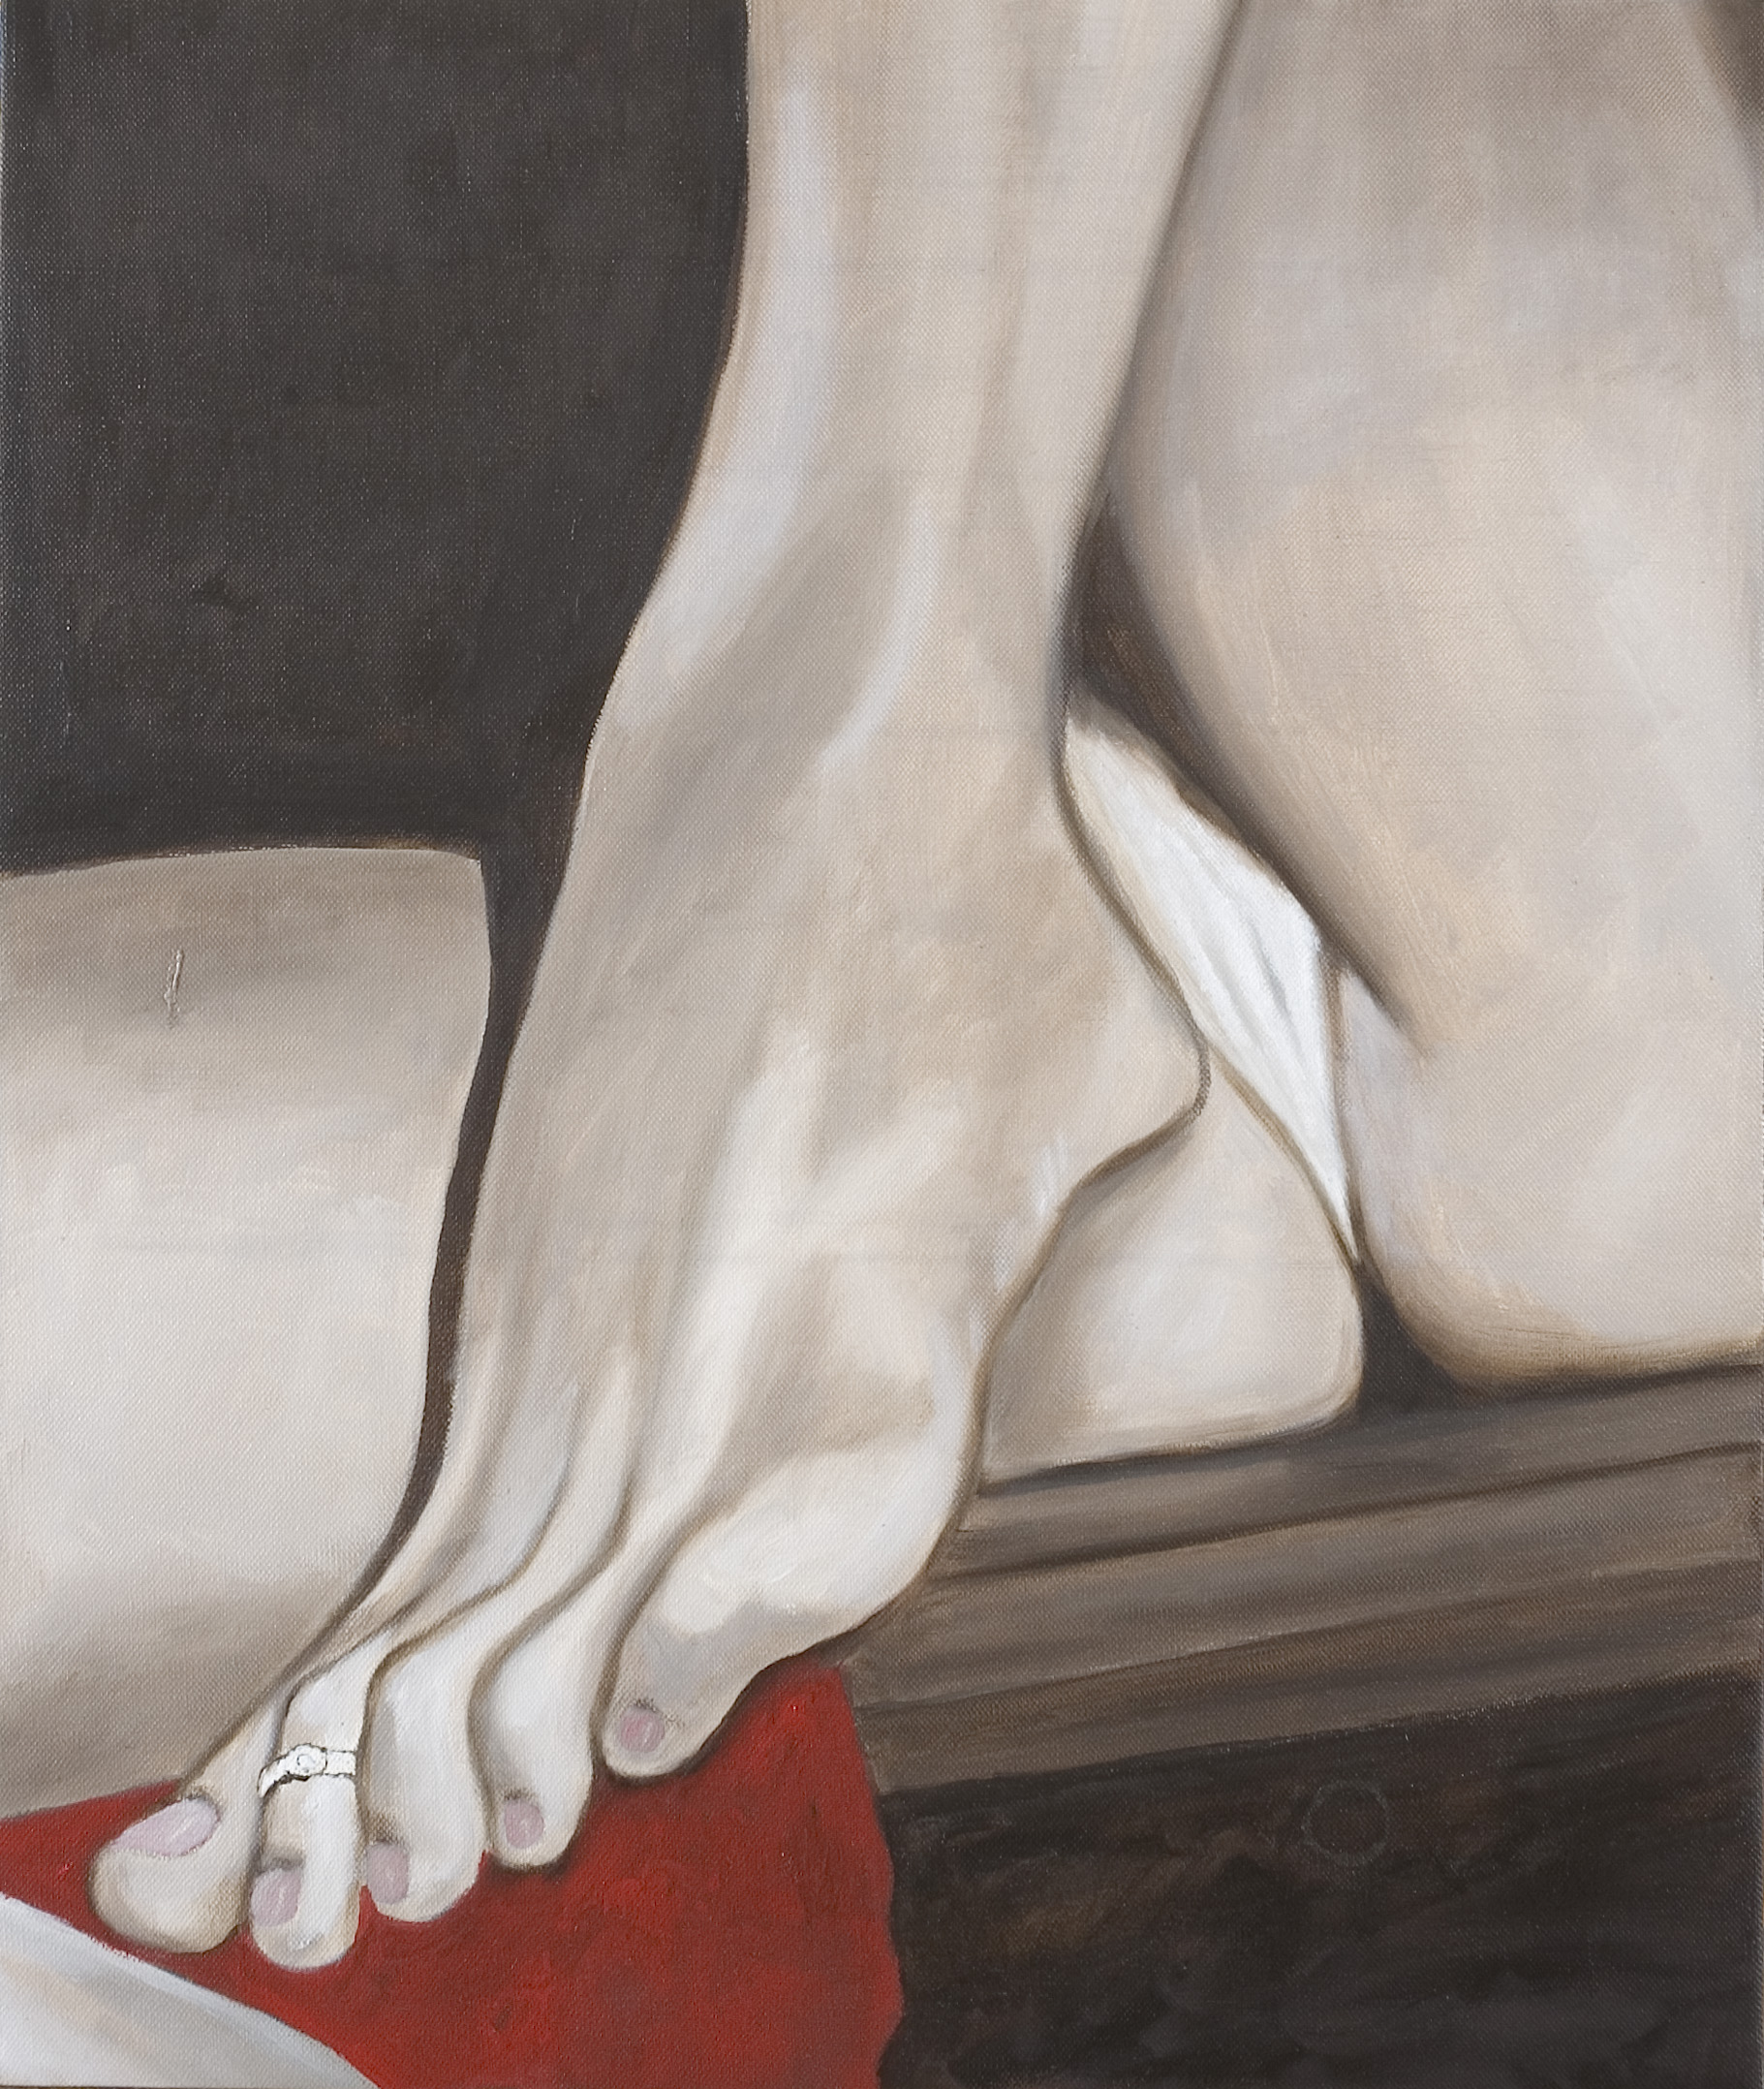 le Pouvoir à tes pieds - 2005 -  olio su tela - cm55x45 - collezione privata  